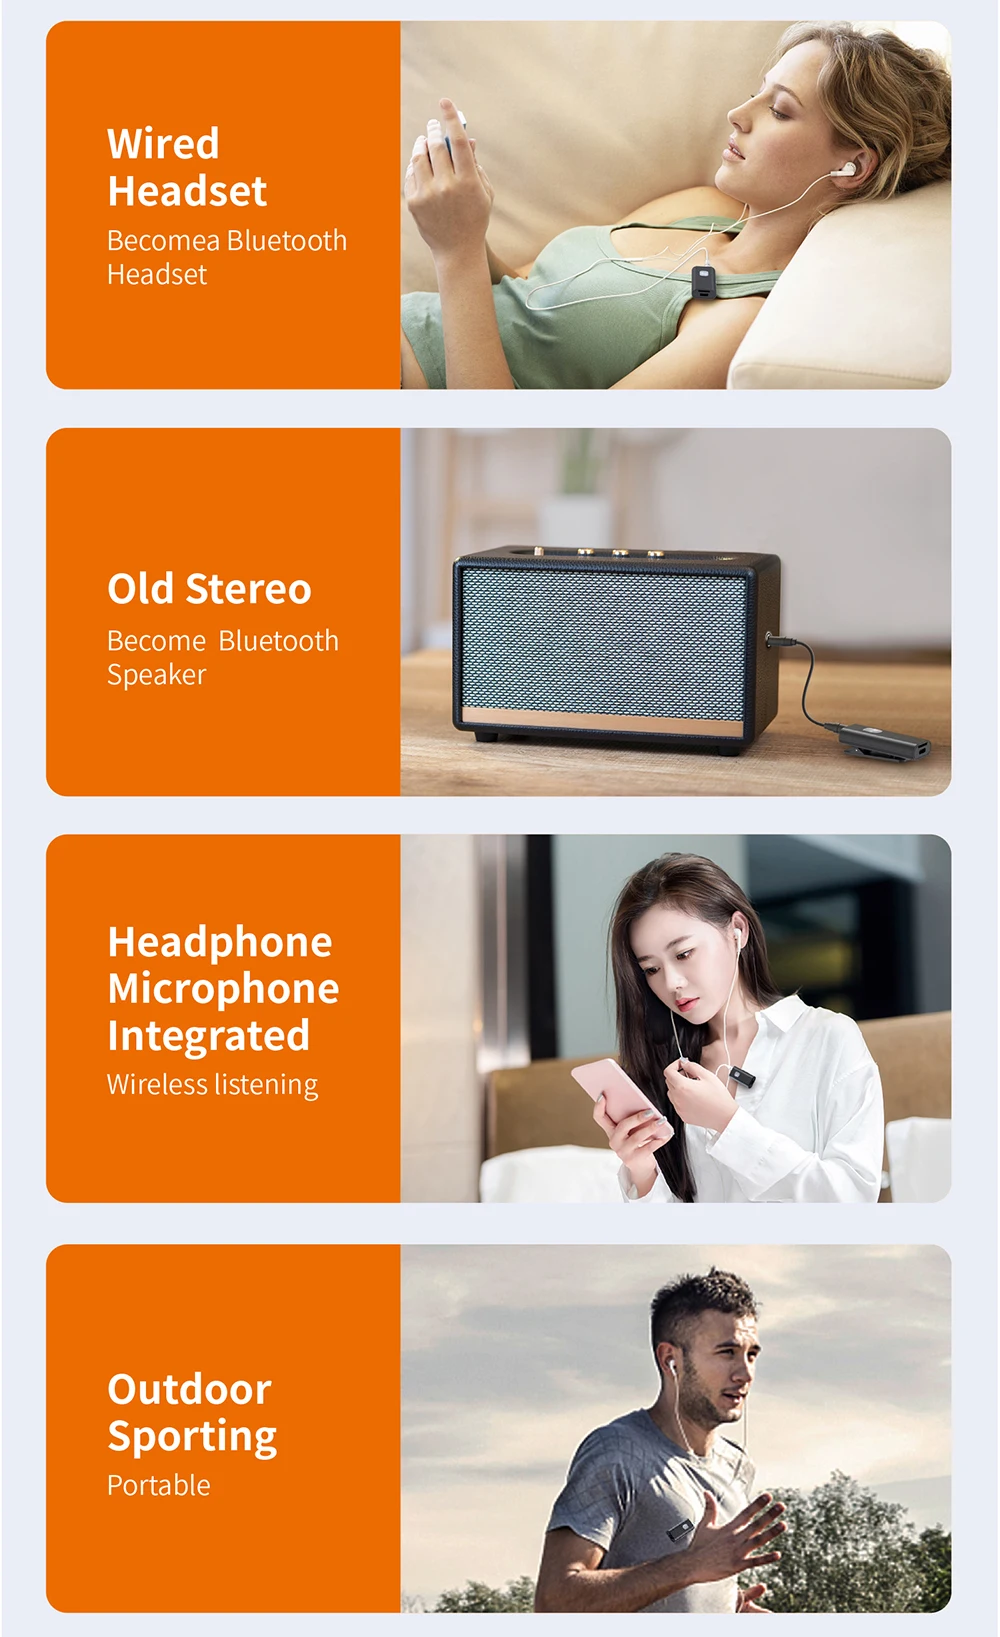 Bluetooth-приемник 5,0 беспроводной аудиоадаптер с задней застежкой поддержка микрофона динамика 3,5 мм AUX MP3 адаптер A7